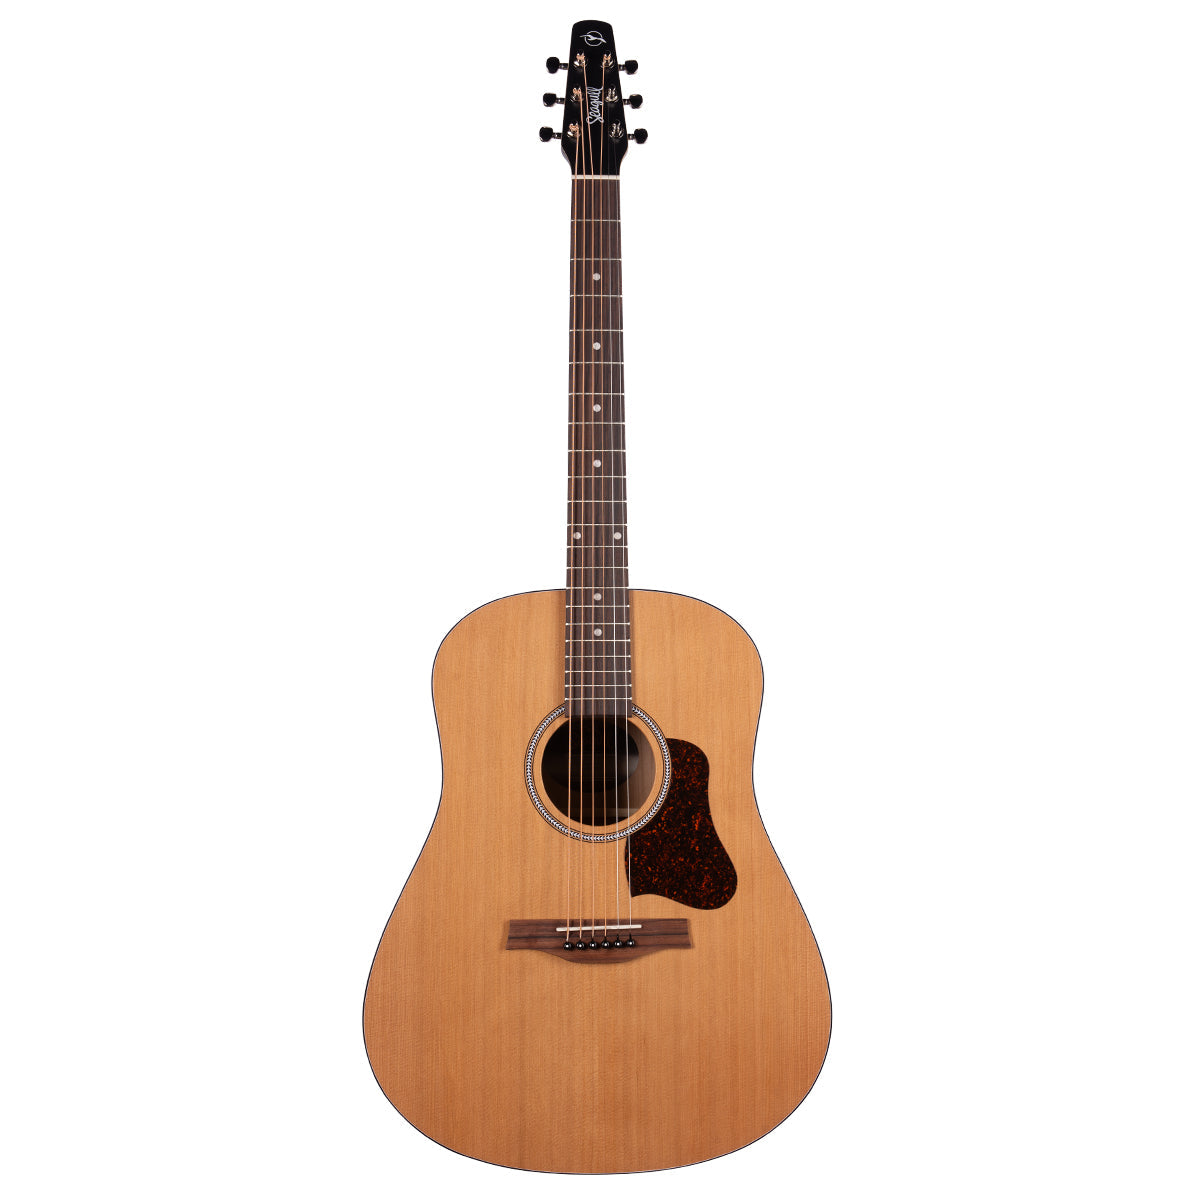 Seagull S6 Original Slim Acoustic Guitar ~ Natural, Acoustic Guitar for sale at Richards Guitars.